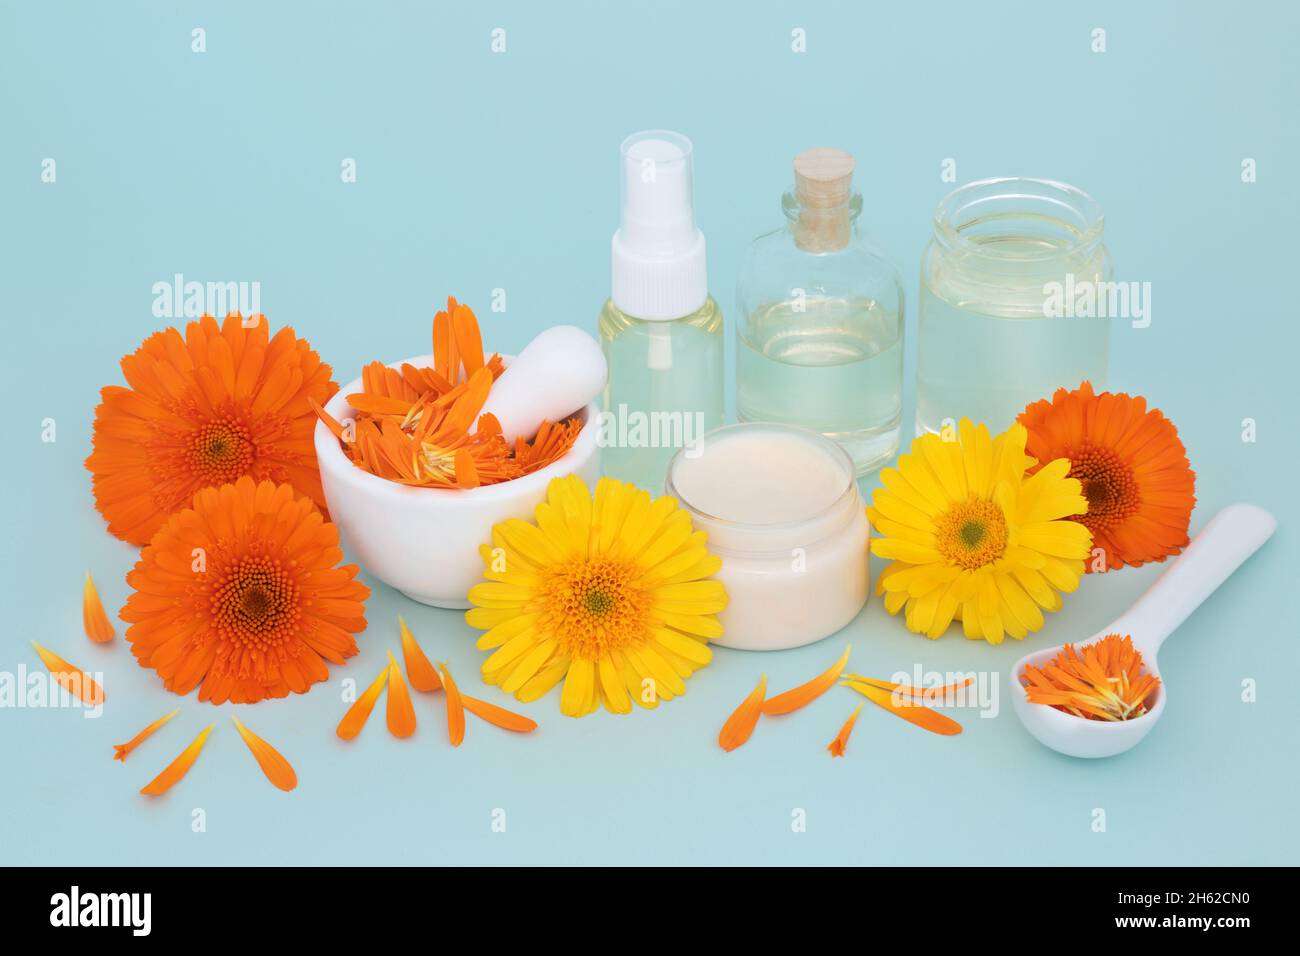 Calendula alternative Hautpflege mit Blumen, Salbe, Ölflaschen und Blütenblättern. Heilt Wunden, Akne, Ekzeme, stimuliert Kollagen und ist antiseptisch. Stockfoto